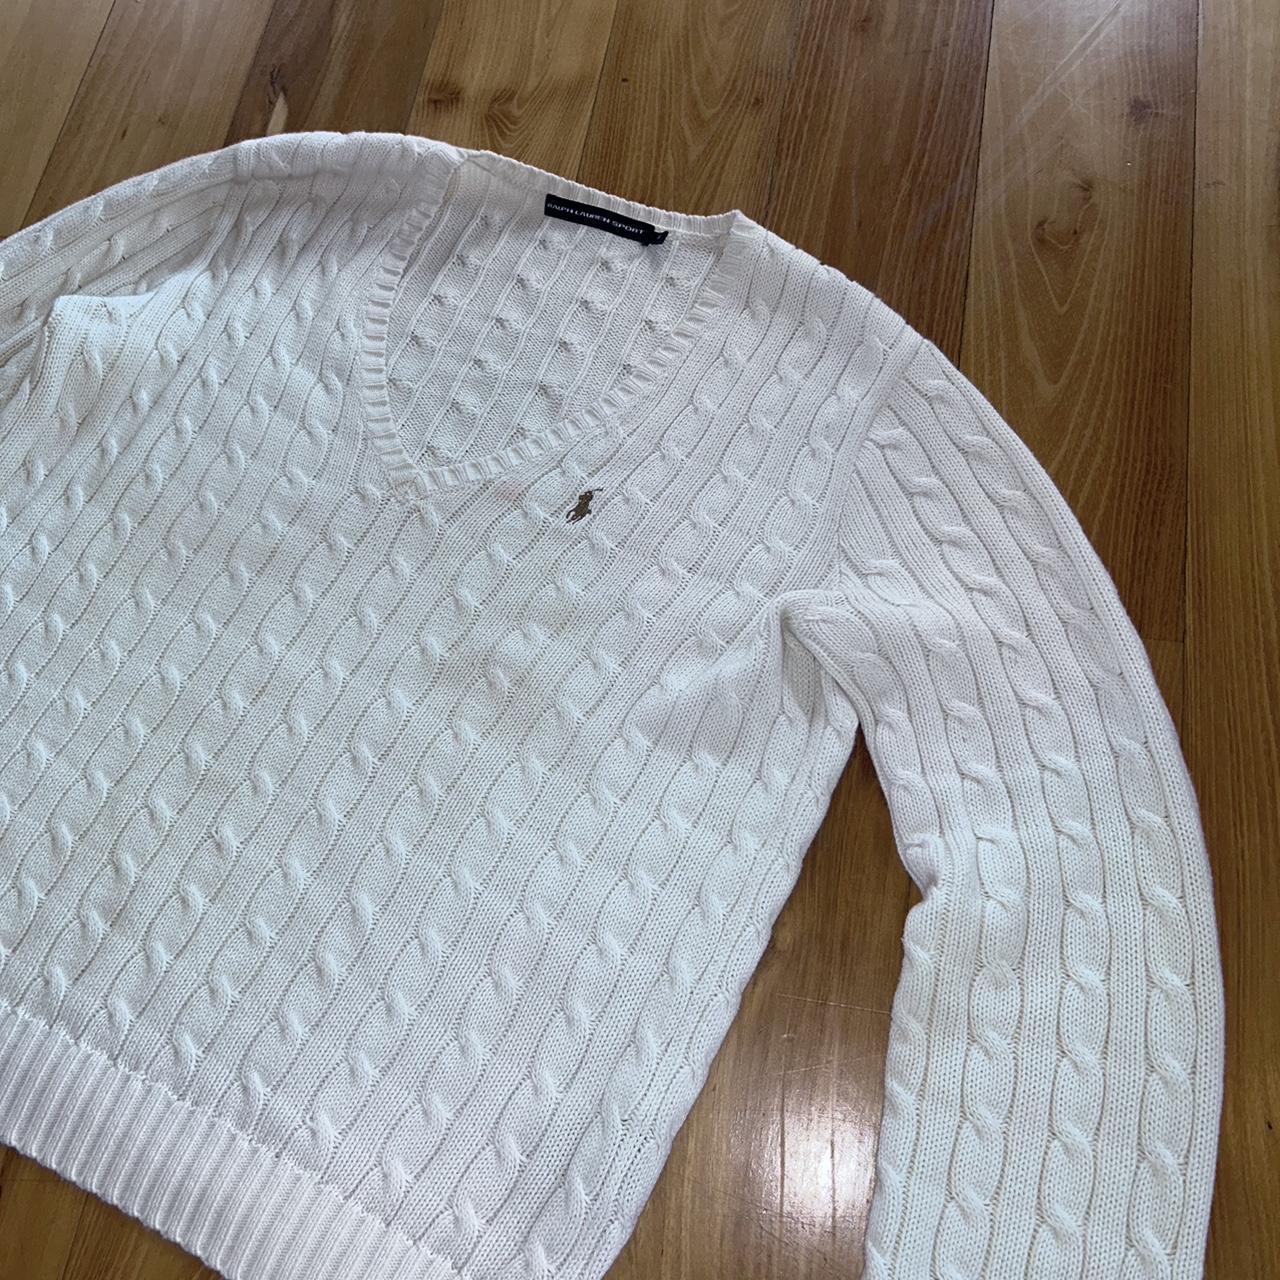 Ralph Lauren Sport Women Cable-knit Cotton V-neck... - Depop